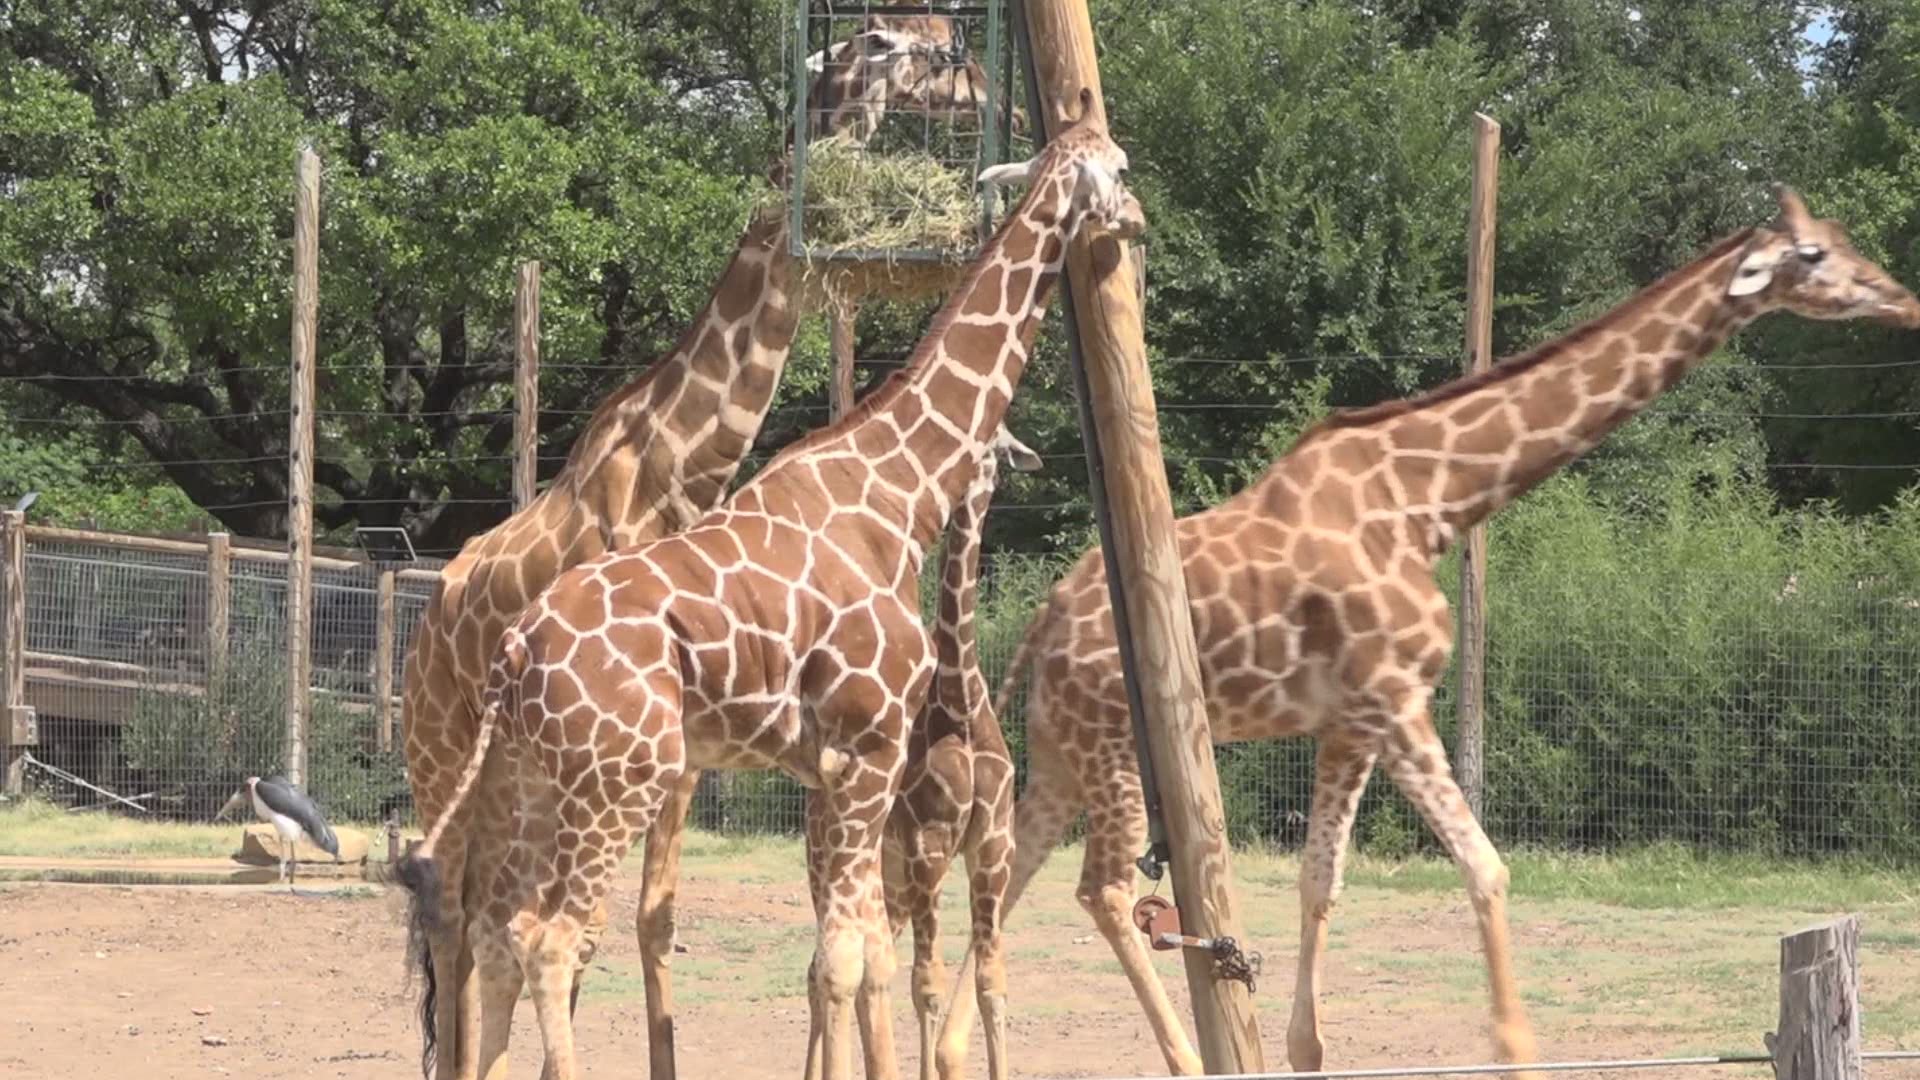 Giraffe, giraffe, giraffe!